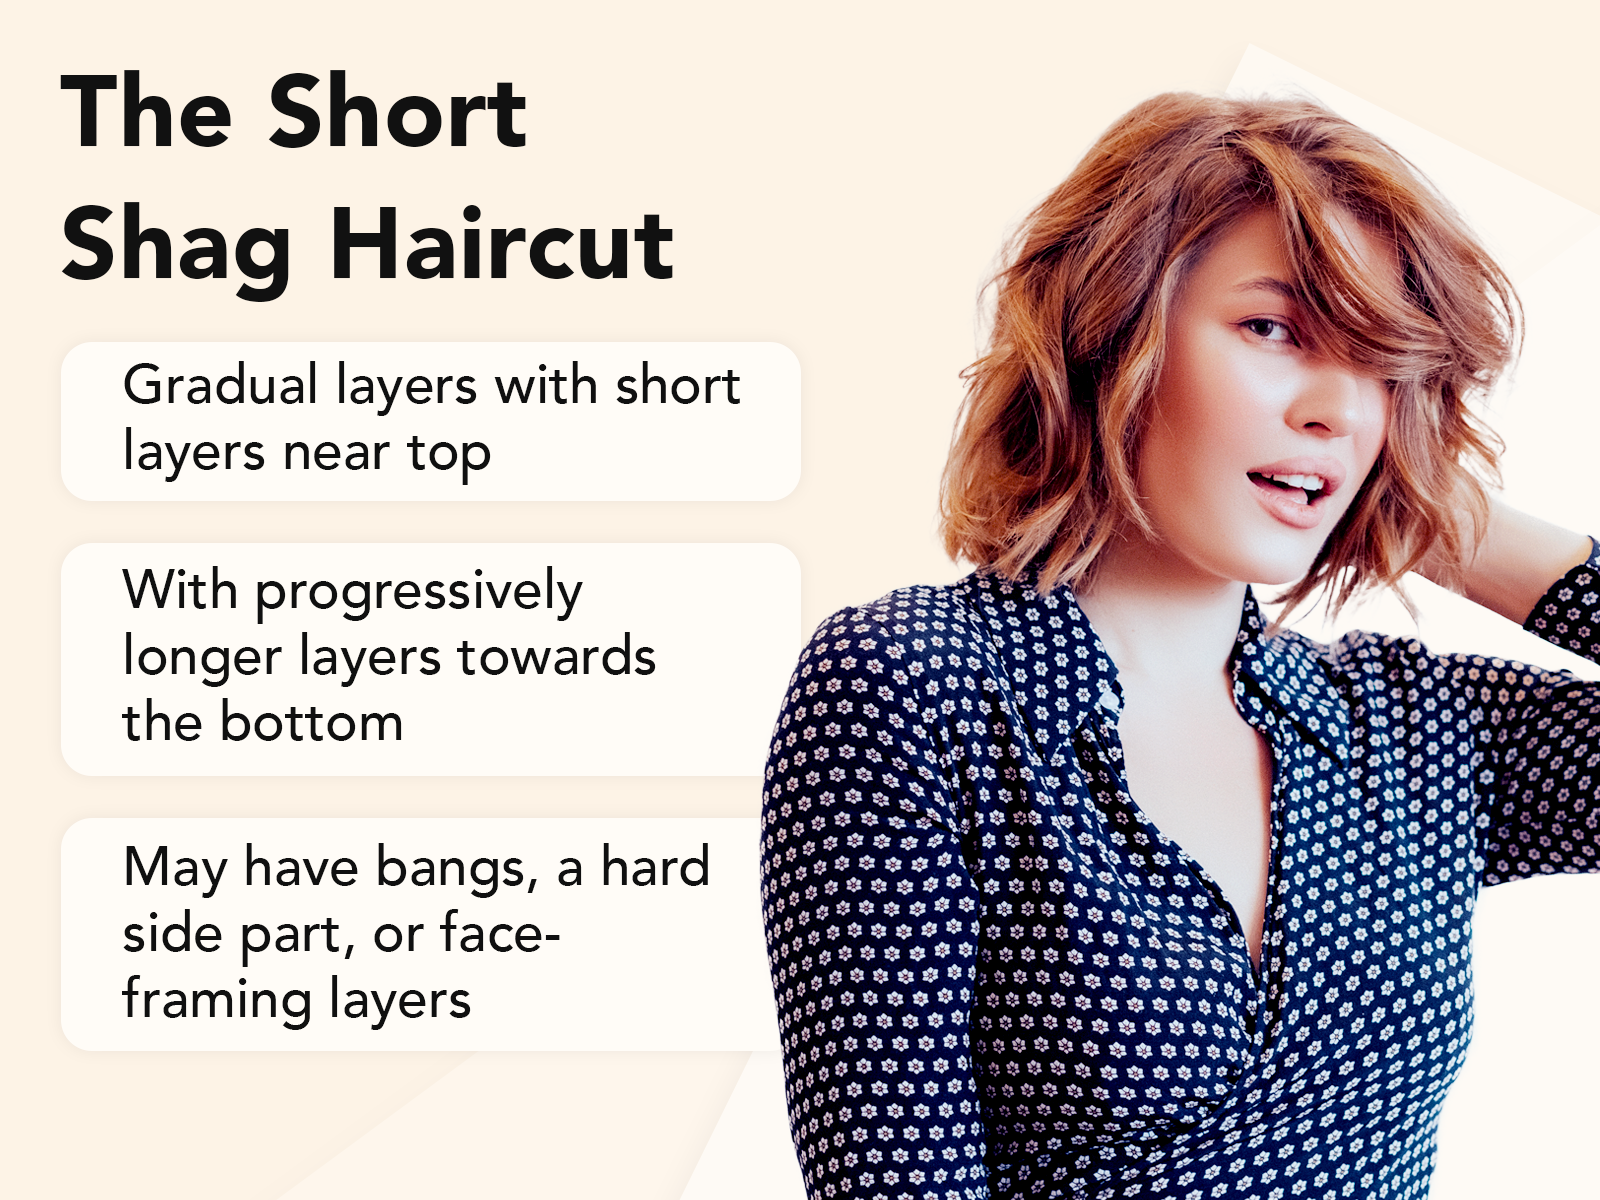 Short Shag Haircut uitleg beeld op een tan achtergrond